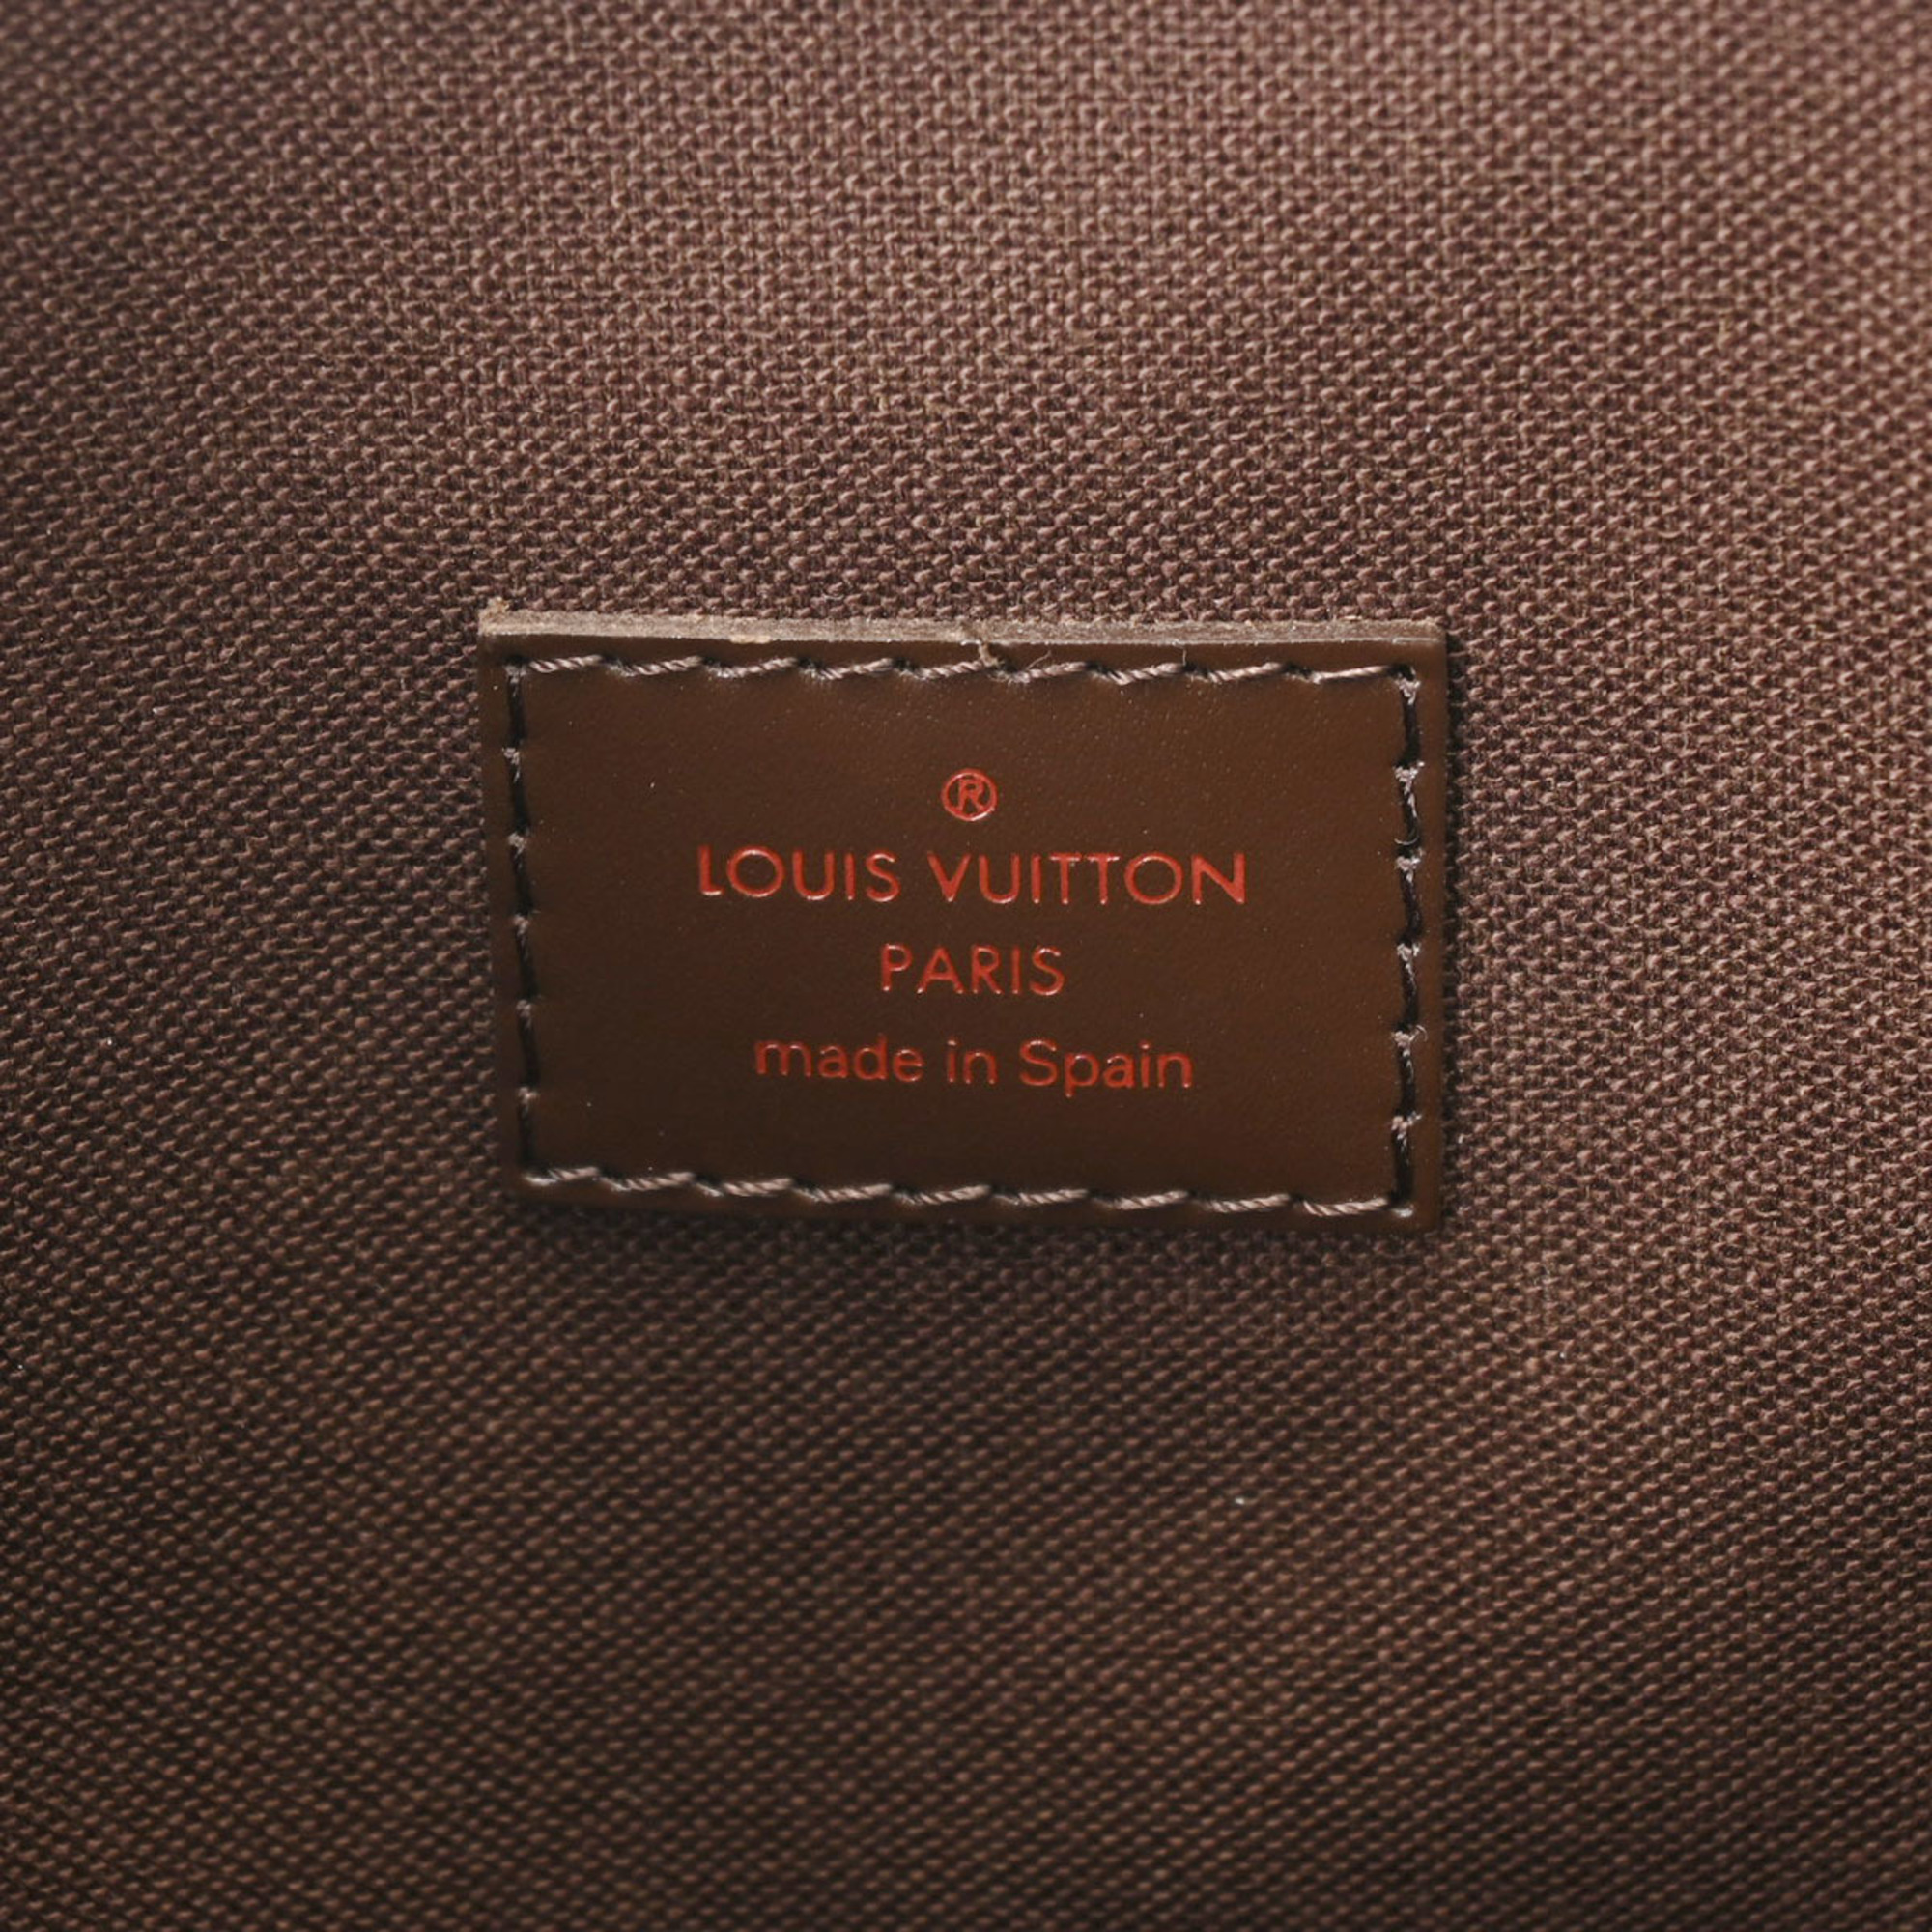 LOUIS VUITTON Louis Vuitton Damier Kababour Brown N52006 Unisex Canvas Tote Bag